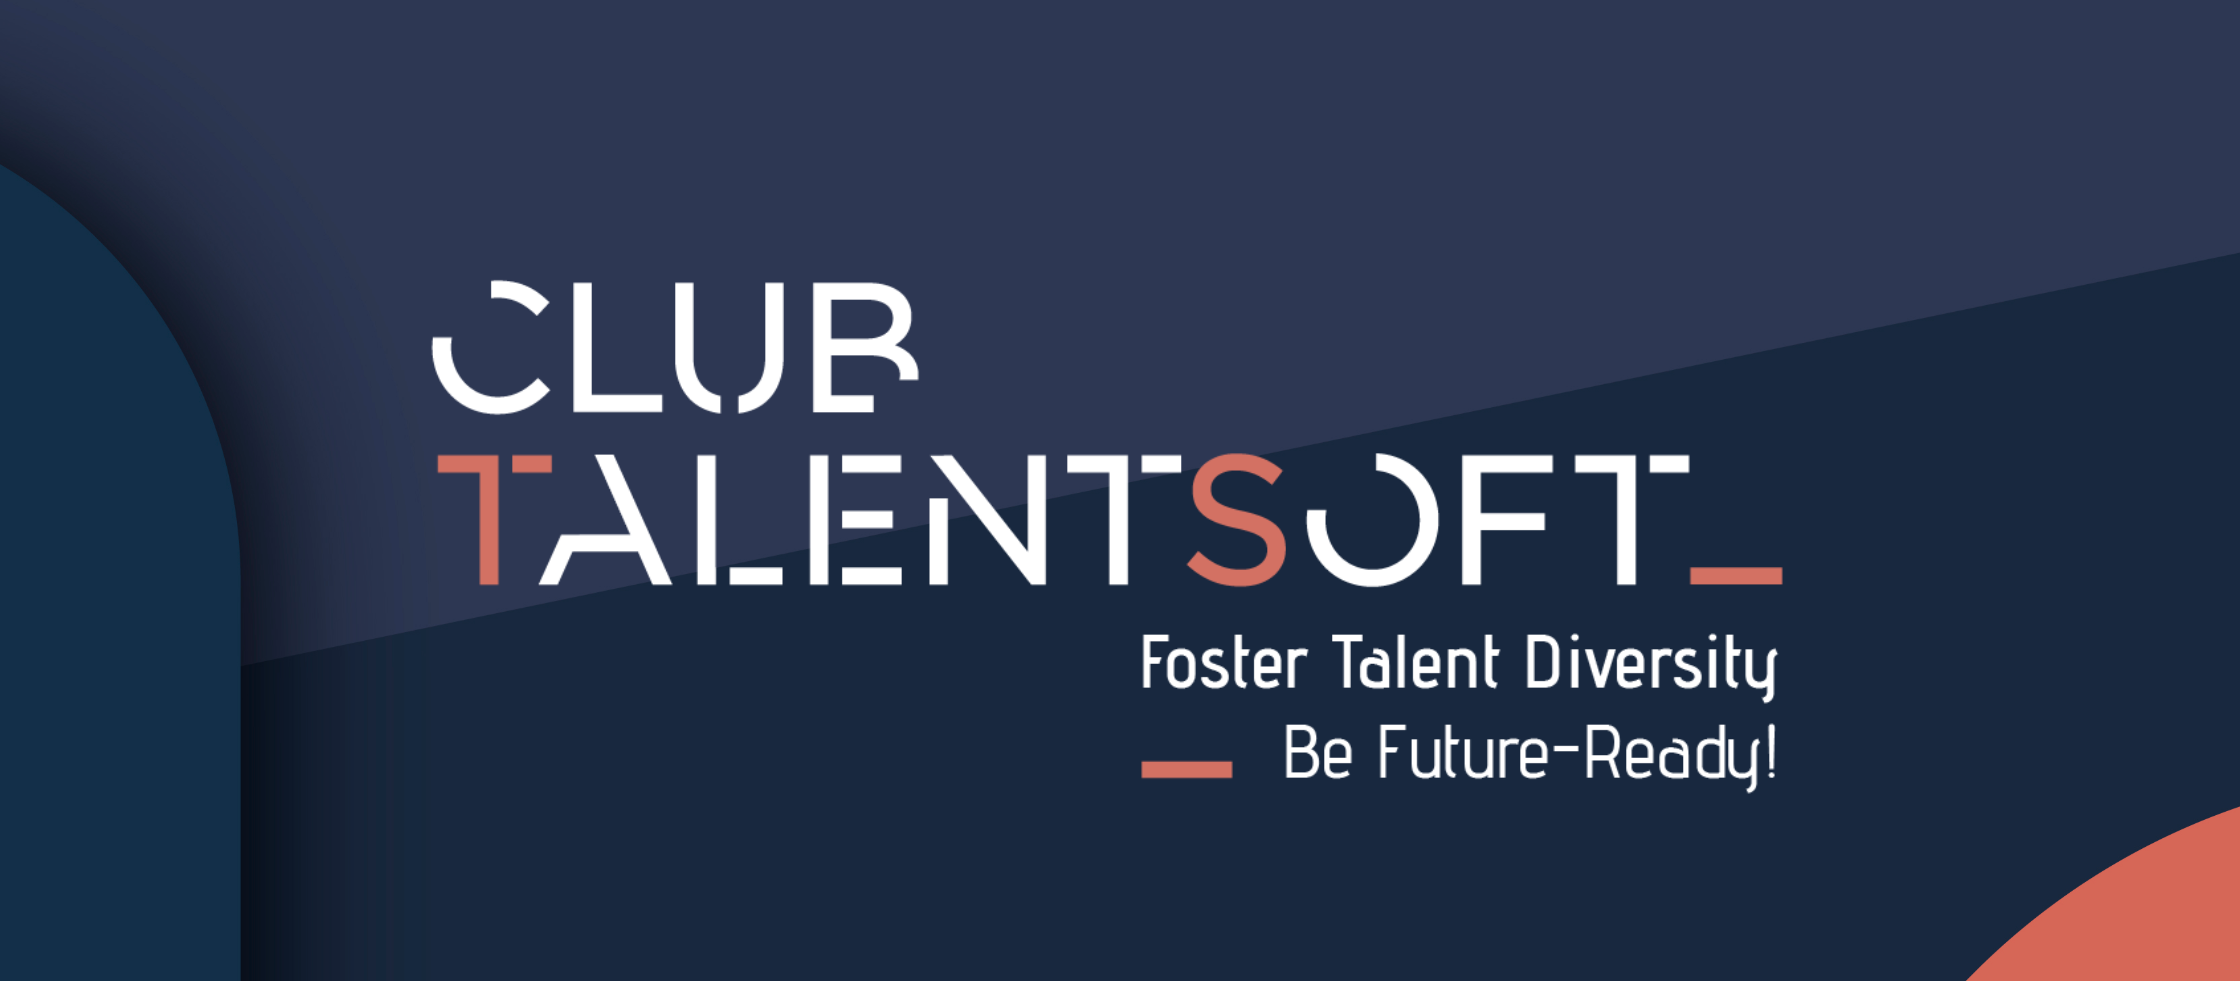 club-talentsoft-2020